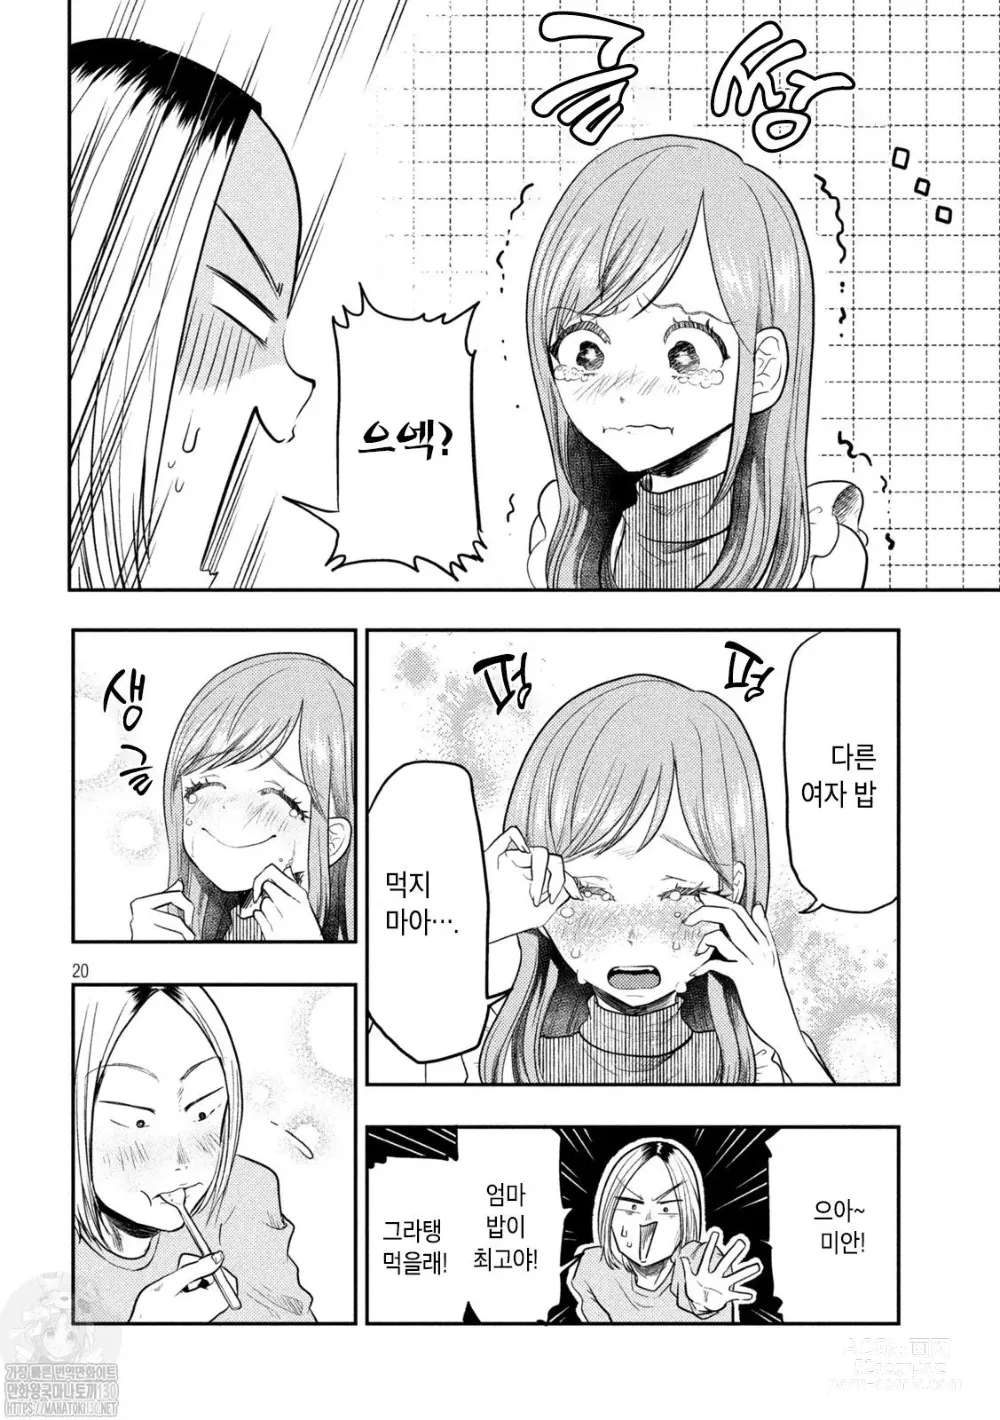 Page 20 of manga Haha wa Tsuyoi.